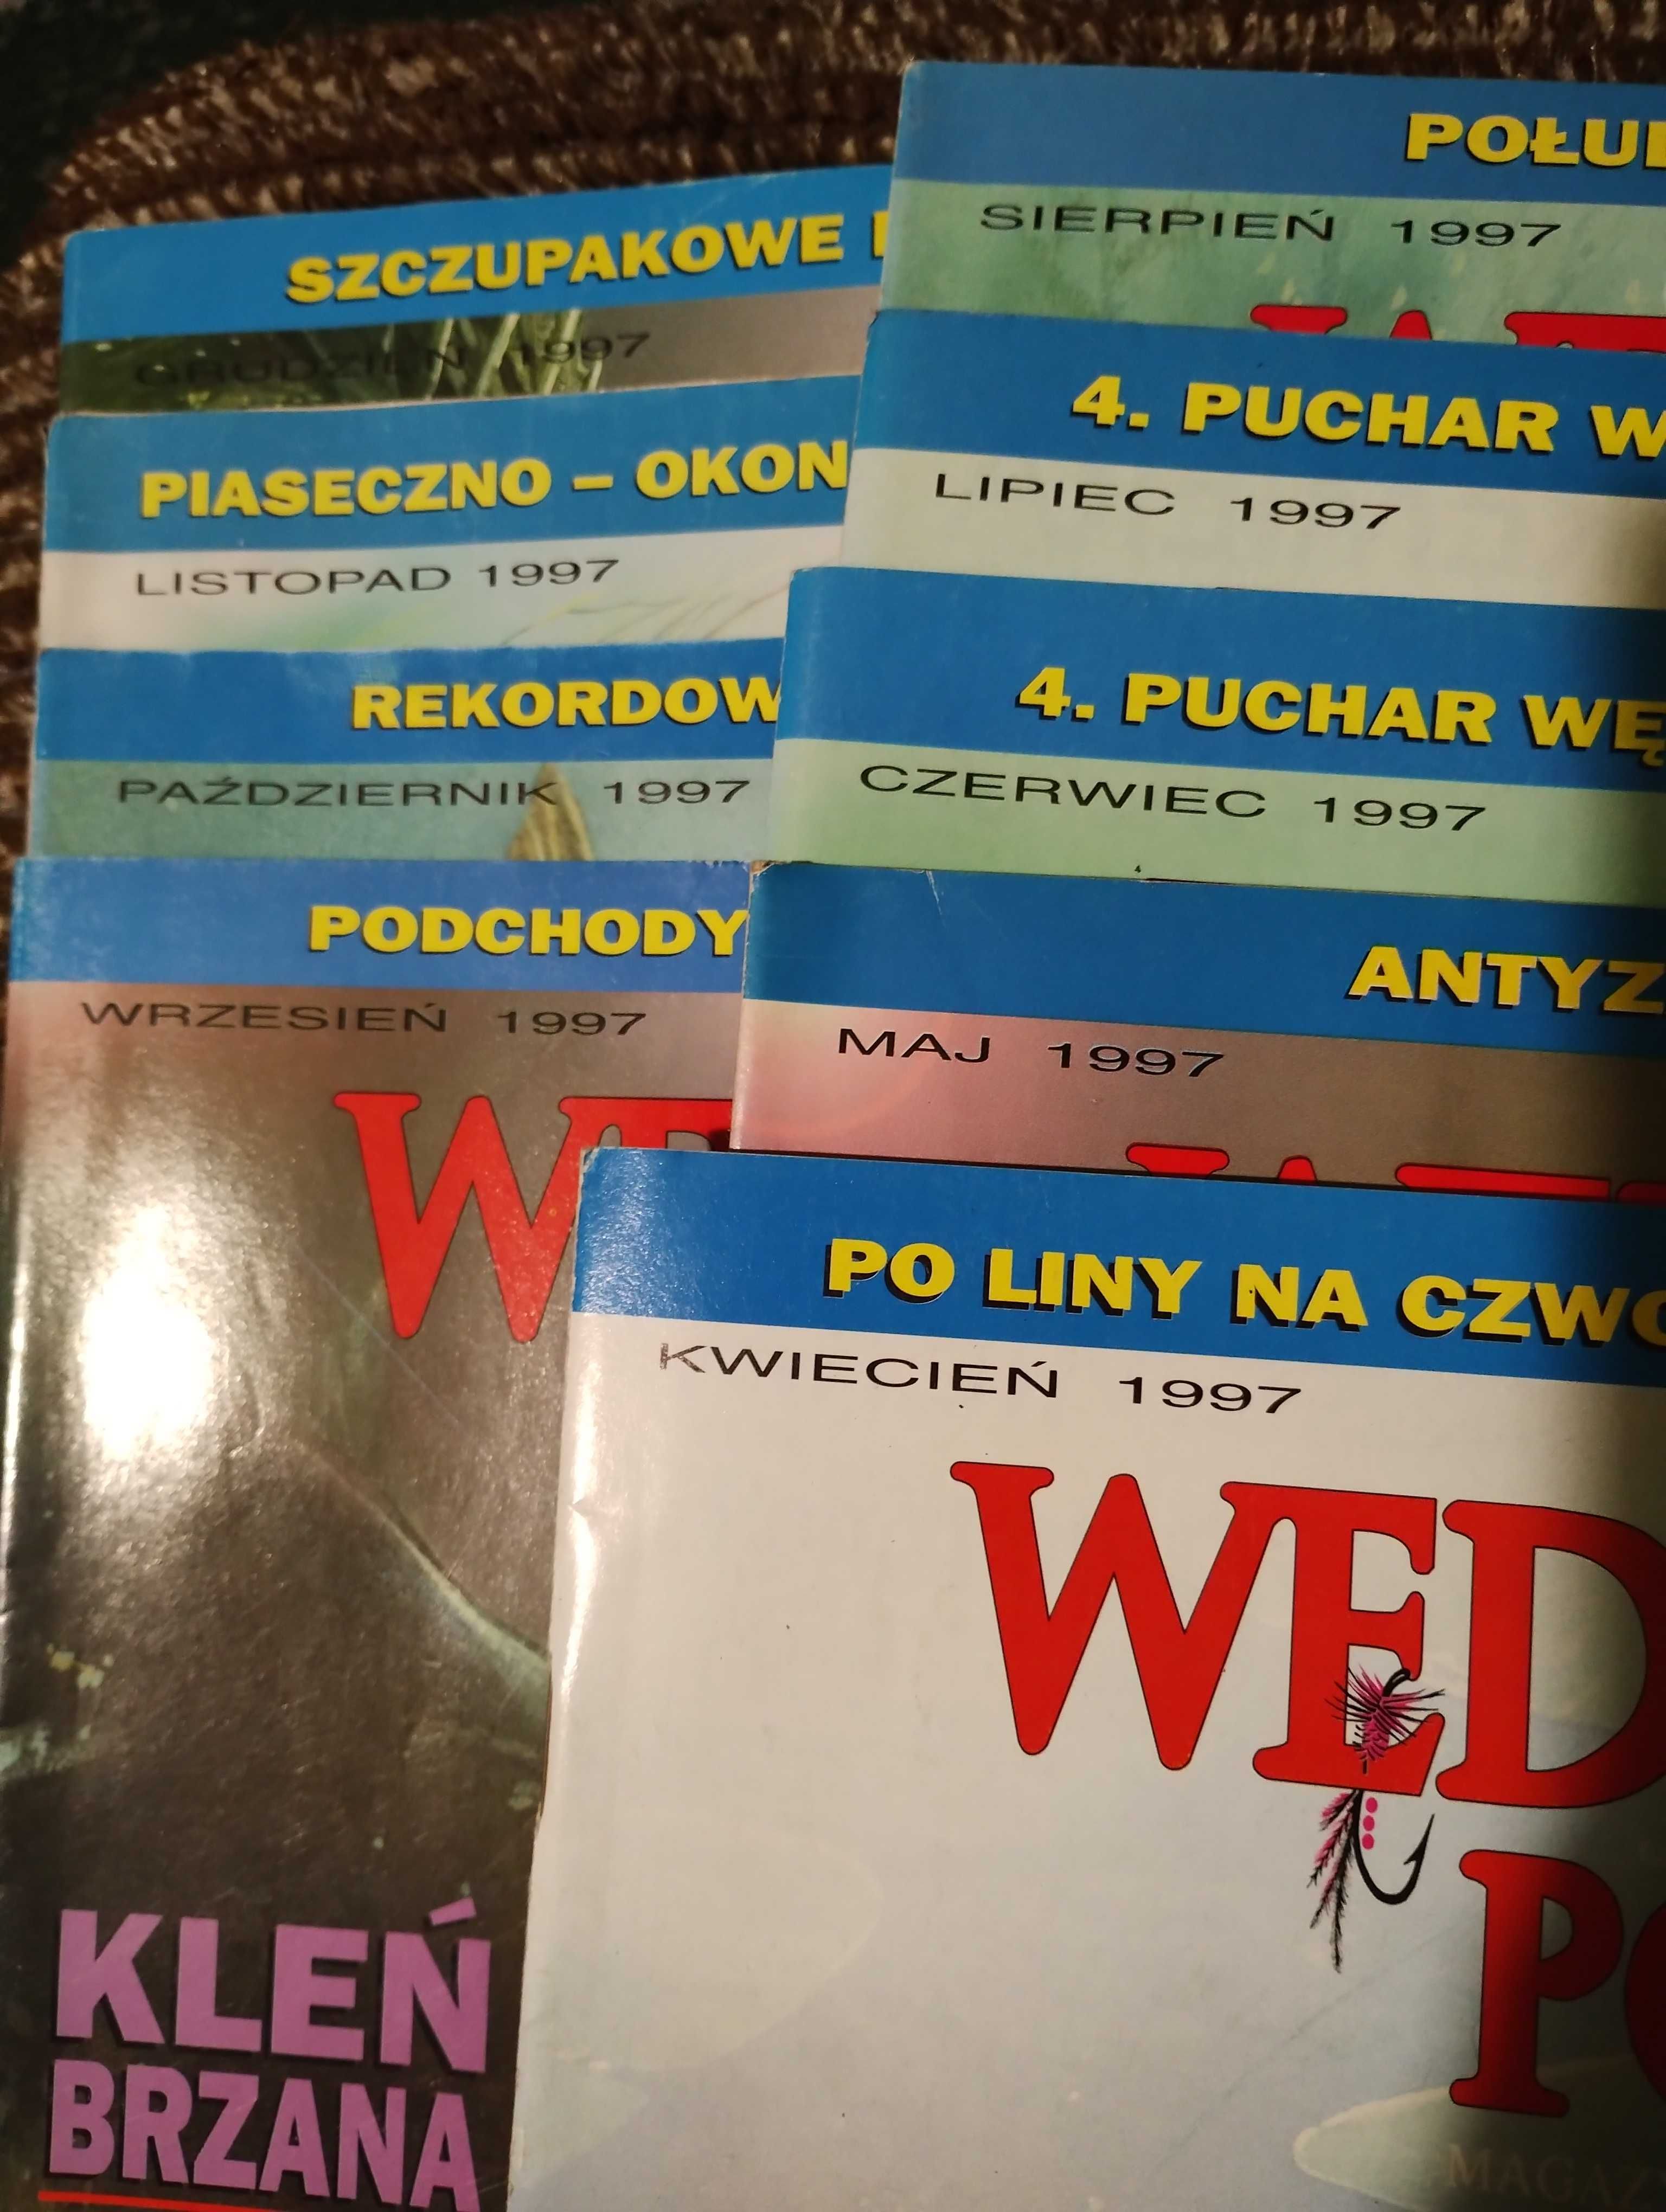 WĘDKARZ POLSKI czasopismo, gazeta- 29 numerów - 1996, 1997, 1998, 1999